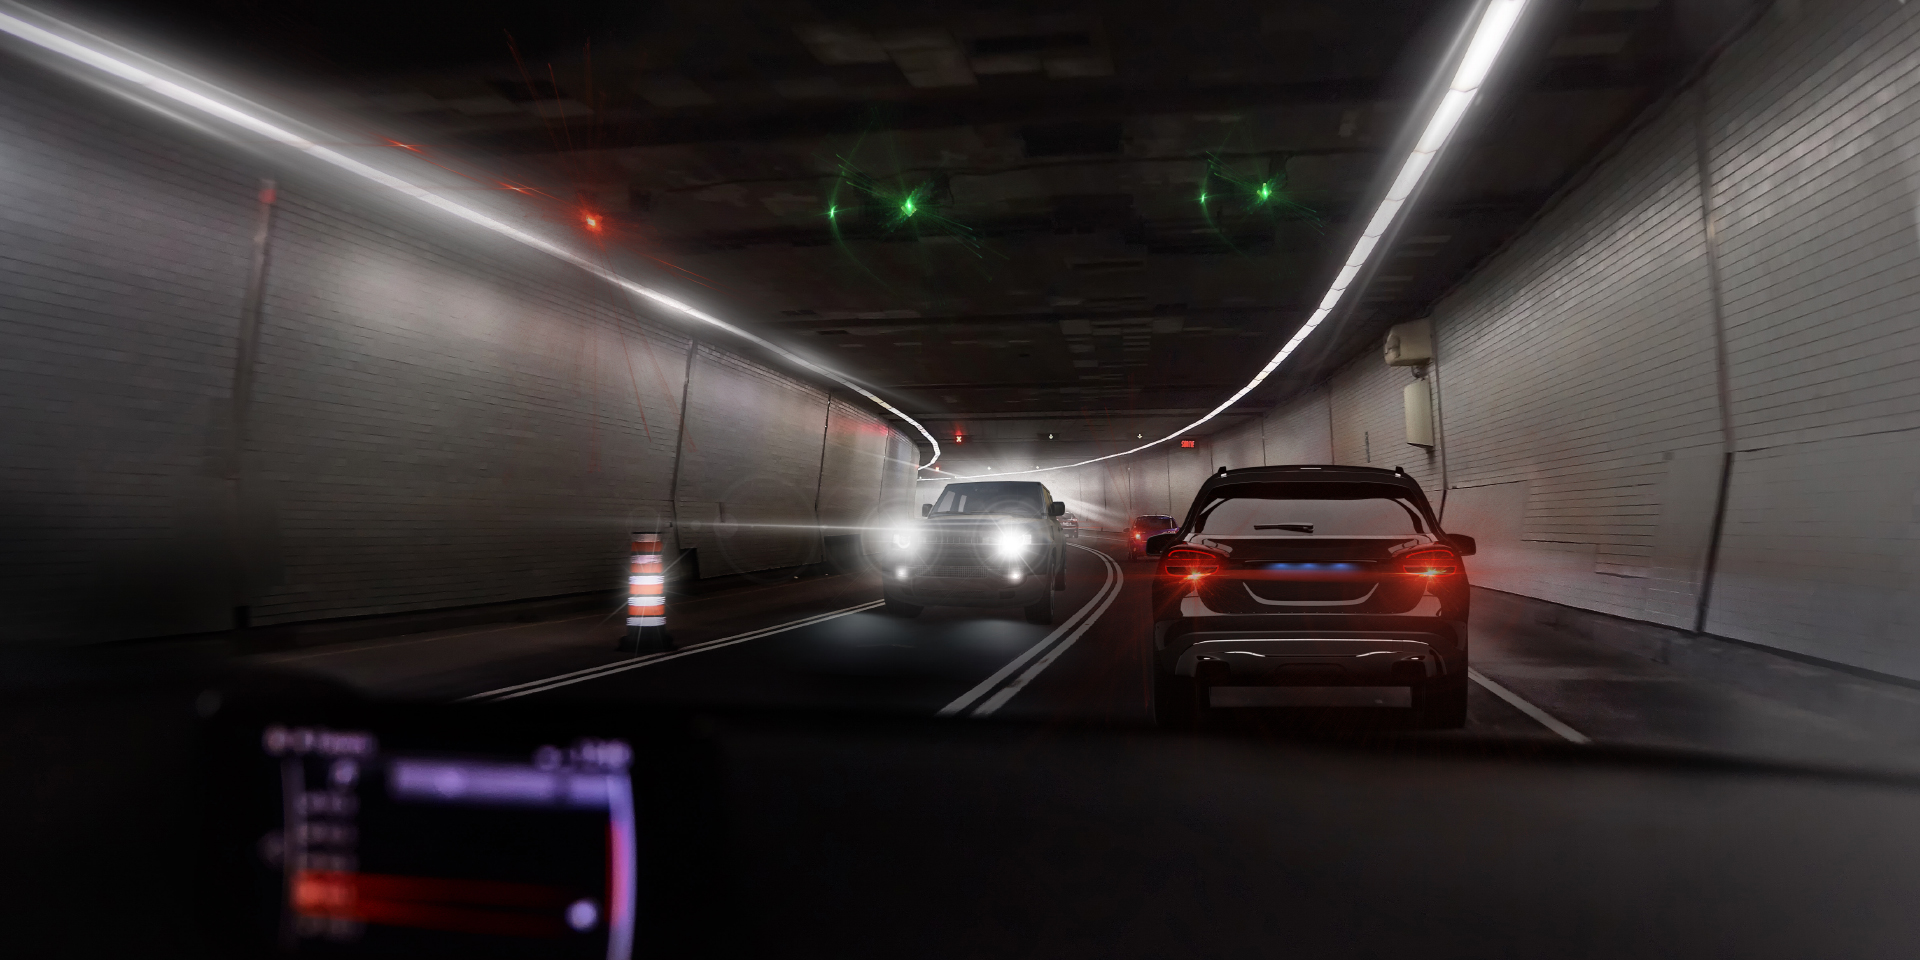 トンネル内で対向車が来た時のドライバーの視界を示す2枚の画像。一つは対向車とトンネルの照明のグレアがあり、もう一方はグレアがはっきりと軽減されている。